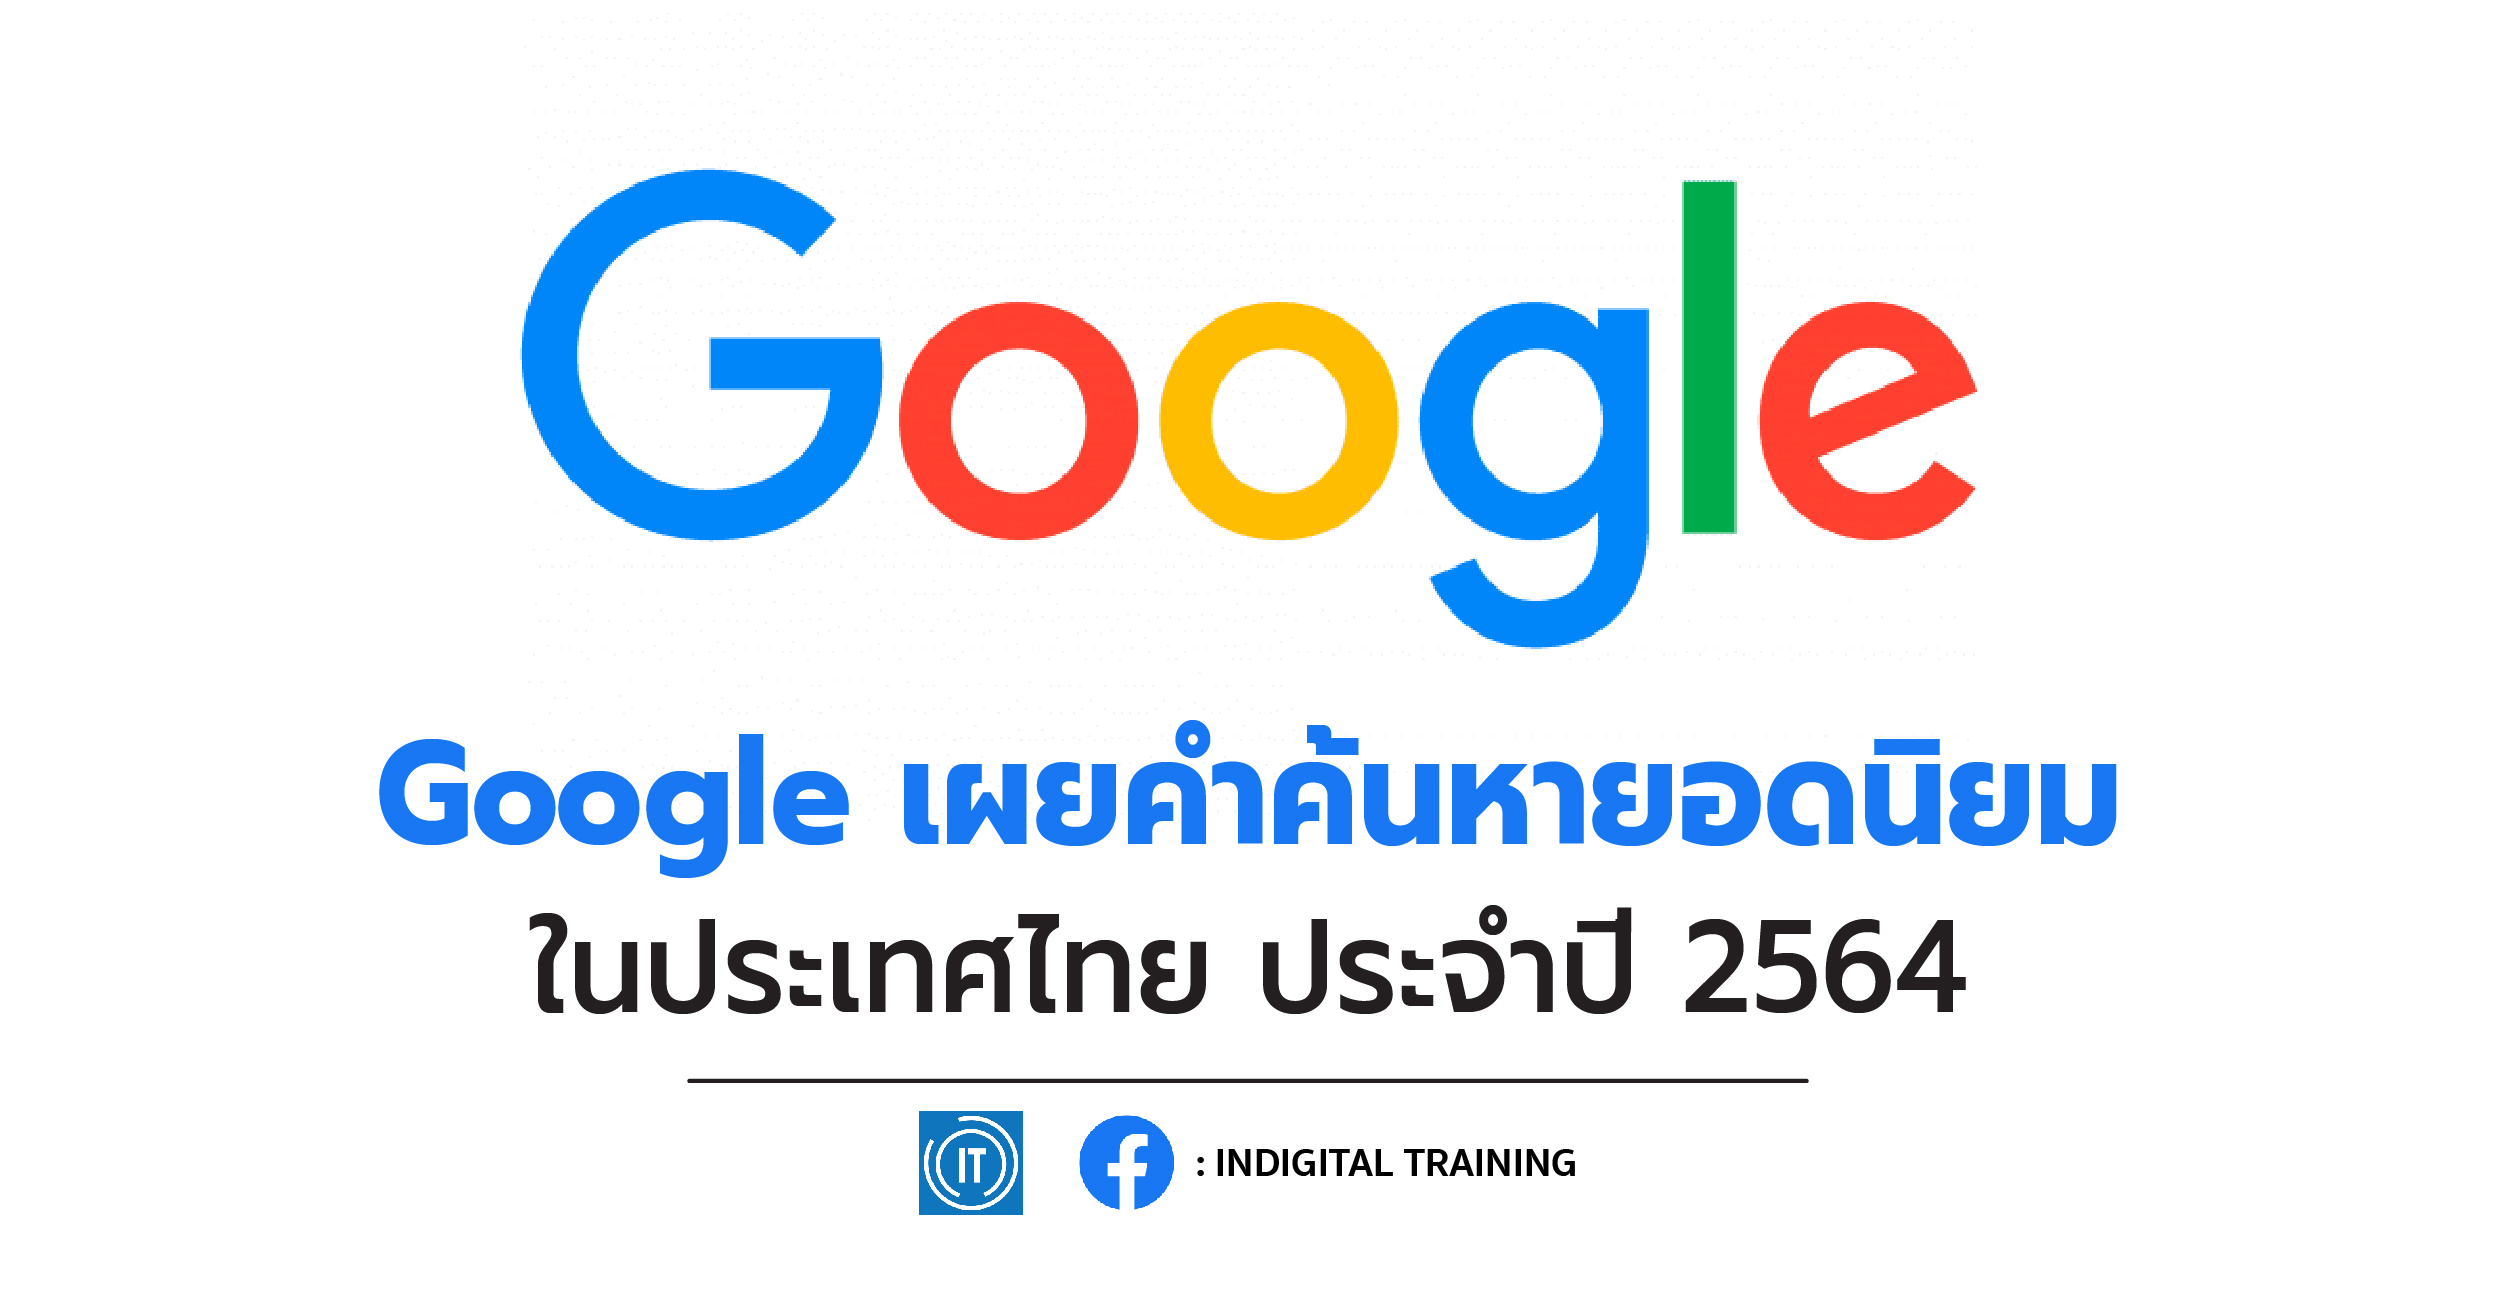 Google เผยคำค้นหายอดนิยม ในประเทศไทย ประจำปี 2564